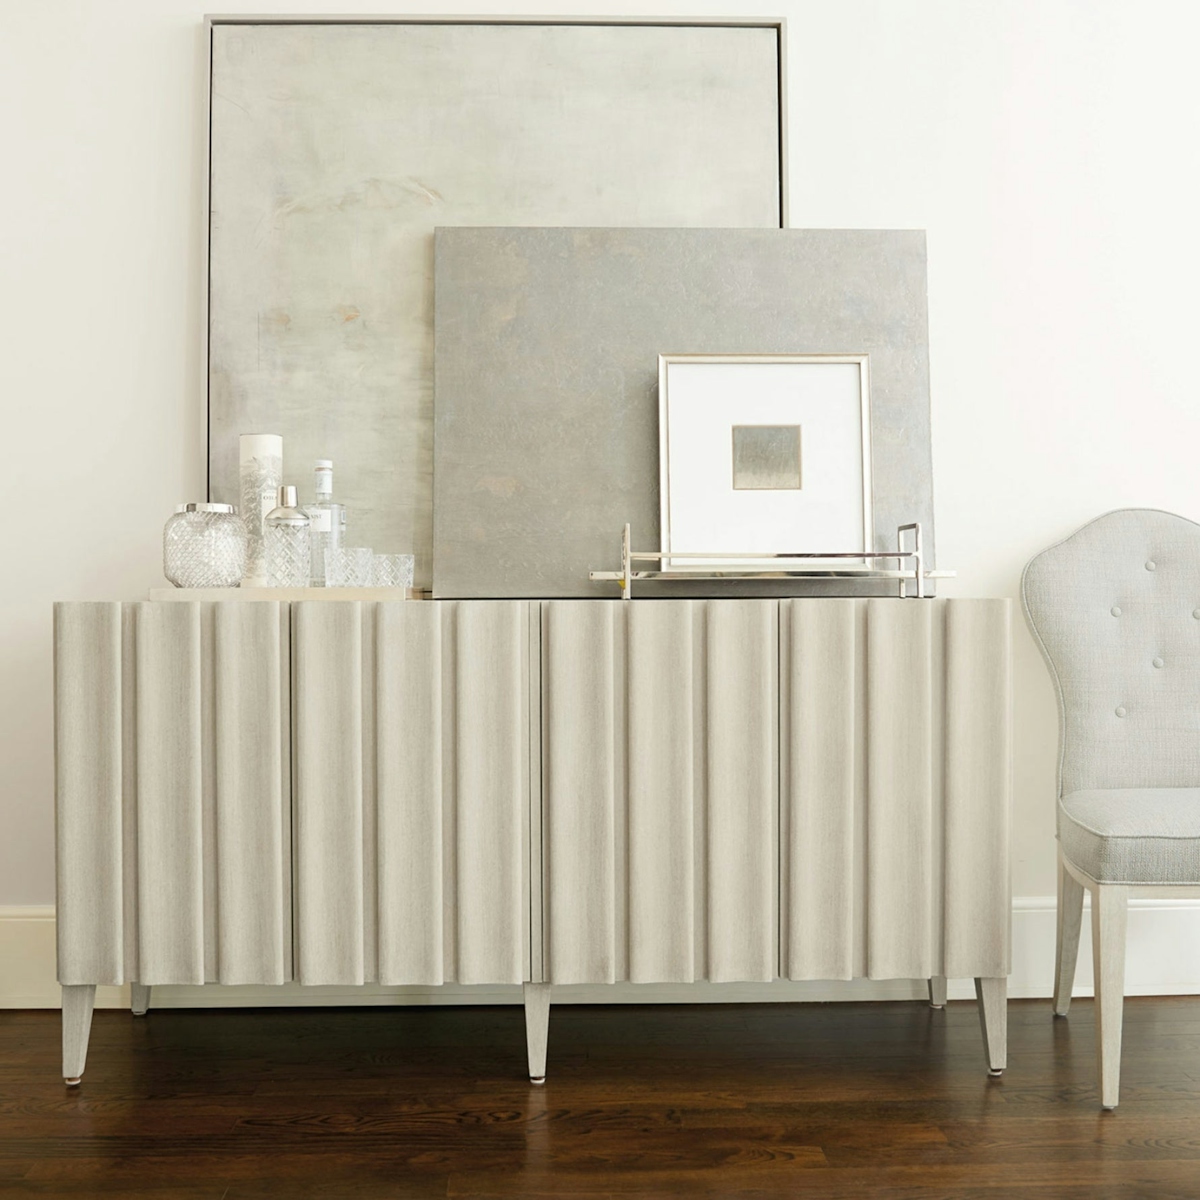 Luxury beige sideboard | Shop Bernhardt furniture online at LuxDeco.com